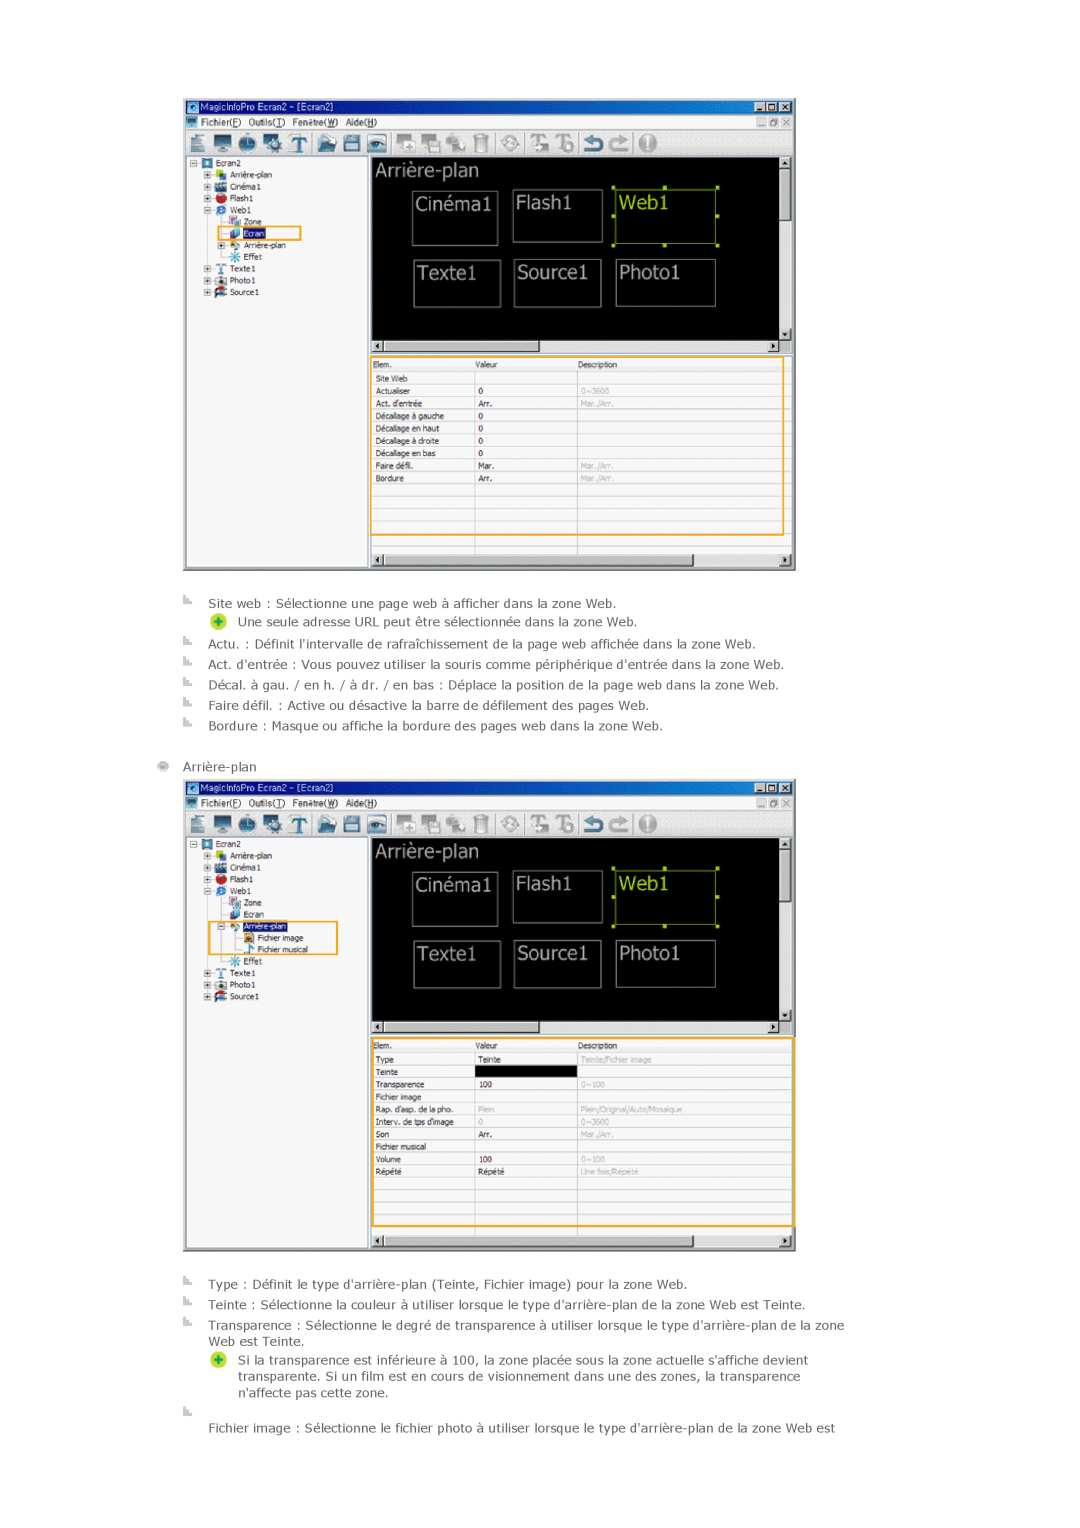 Samsung PH42KLPLBC/EN, PH50KLPLBC/EN manual Site web Sélectionne une page web à afficher dans la zone Web, Arrière-plan 